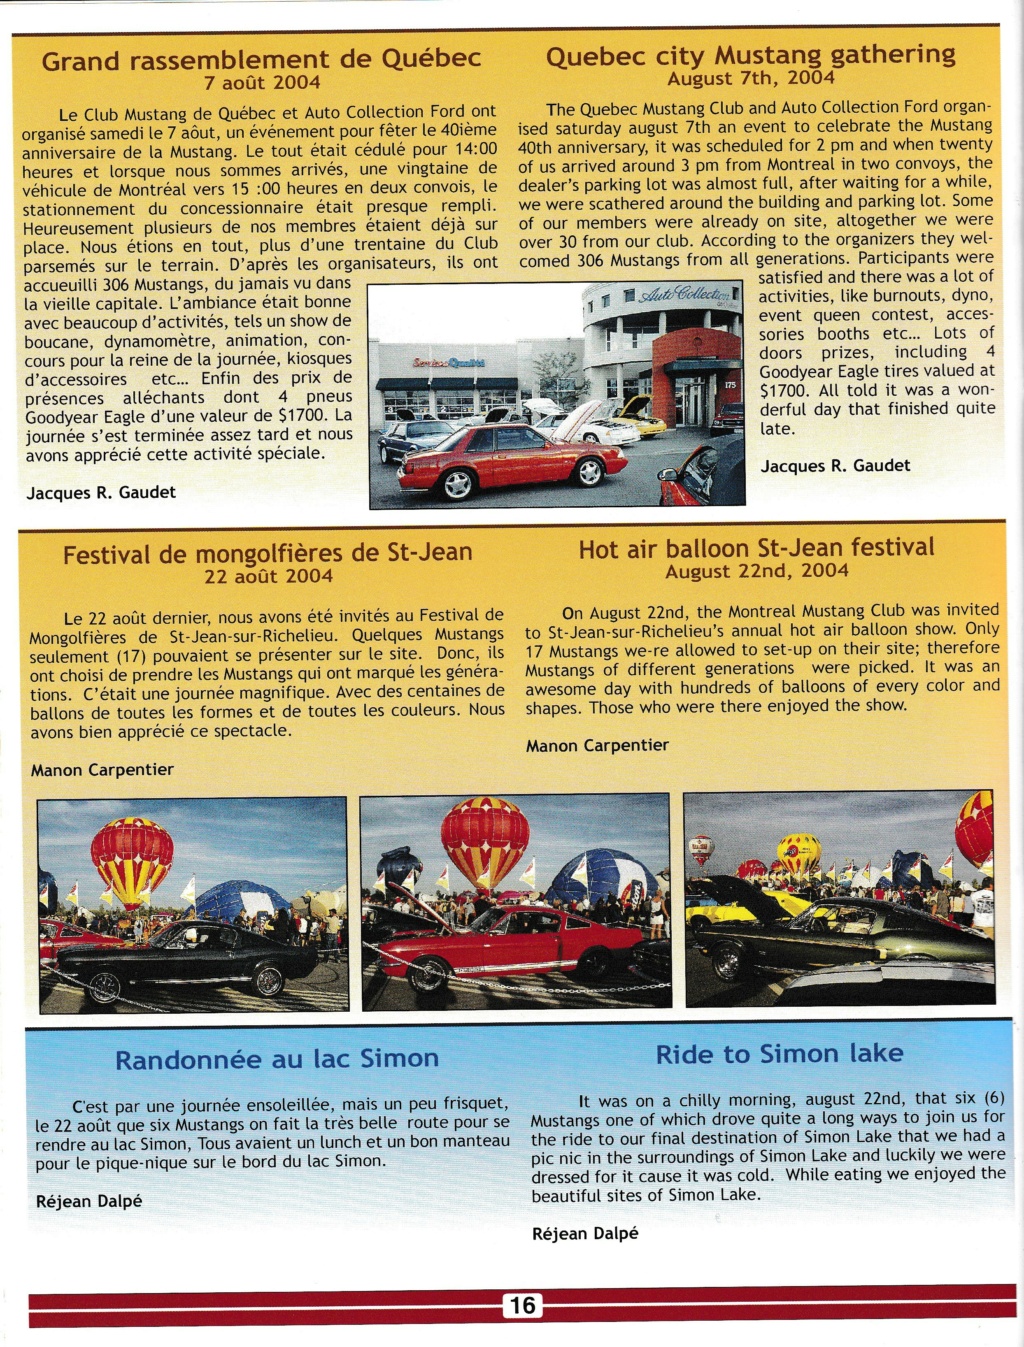 Montréal Mustang dans le temps! 1981 à aujourd'hui (Histoire en photos) - Page 13 Img_2593